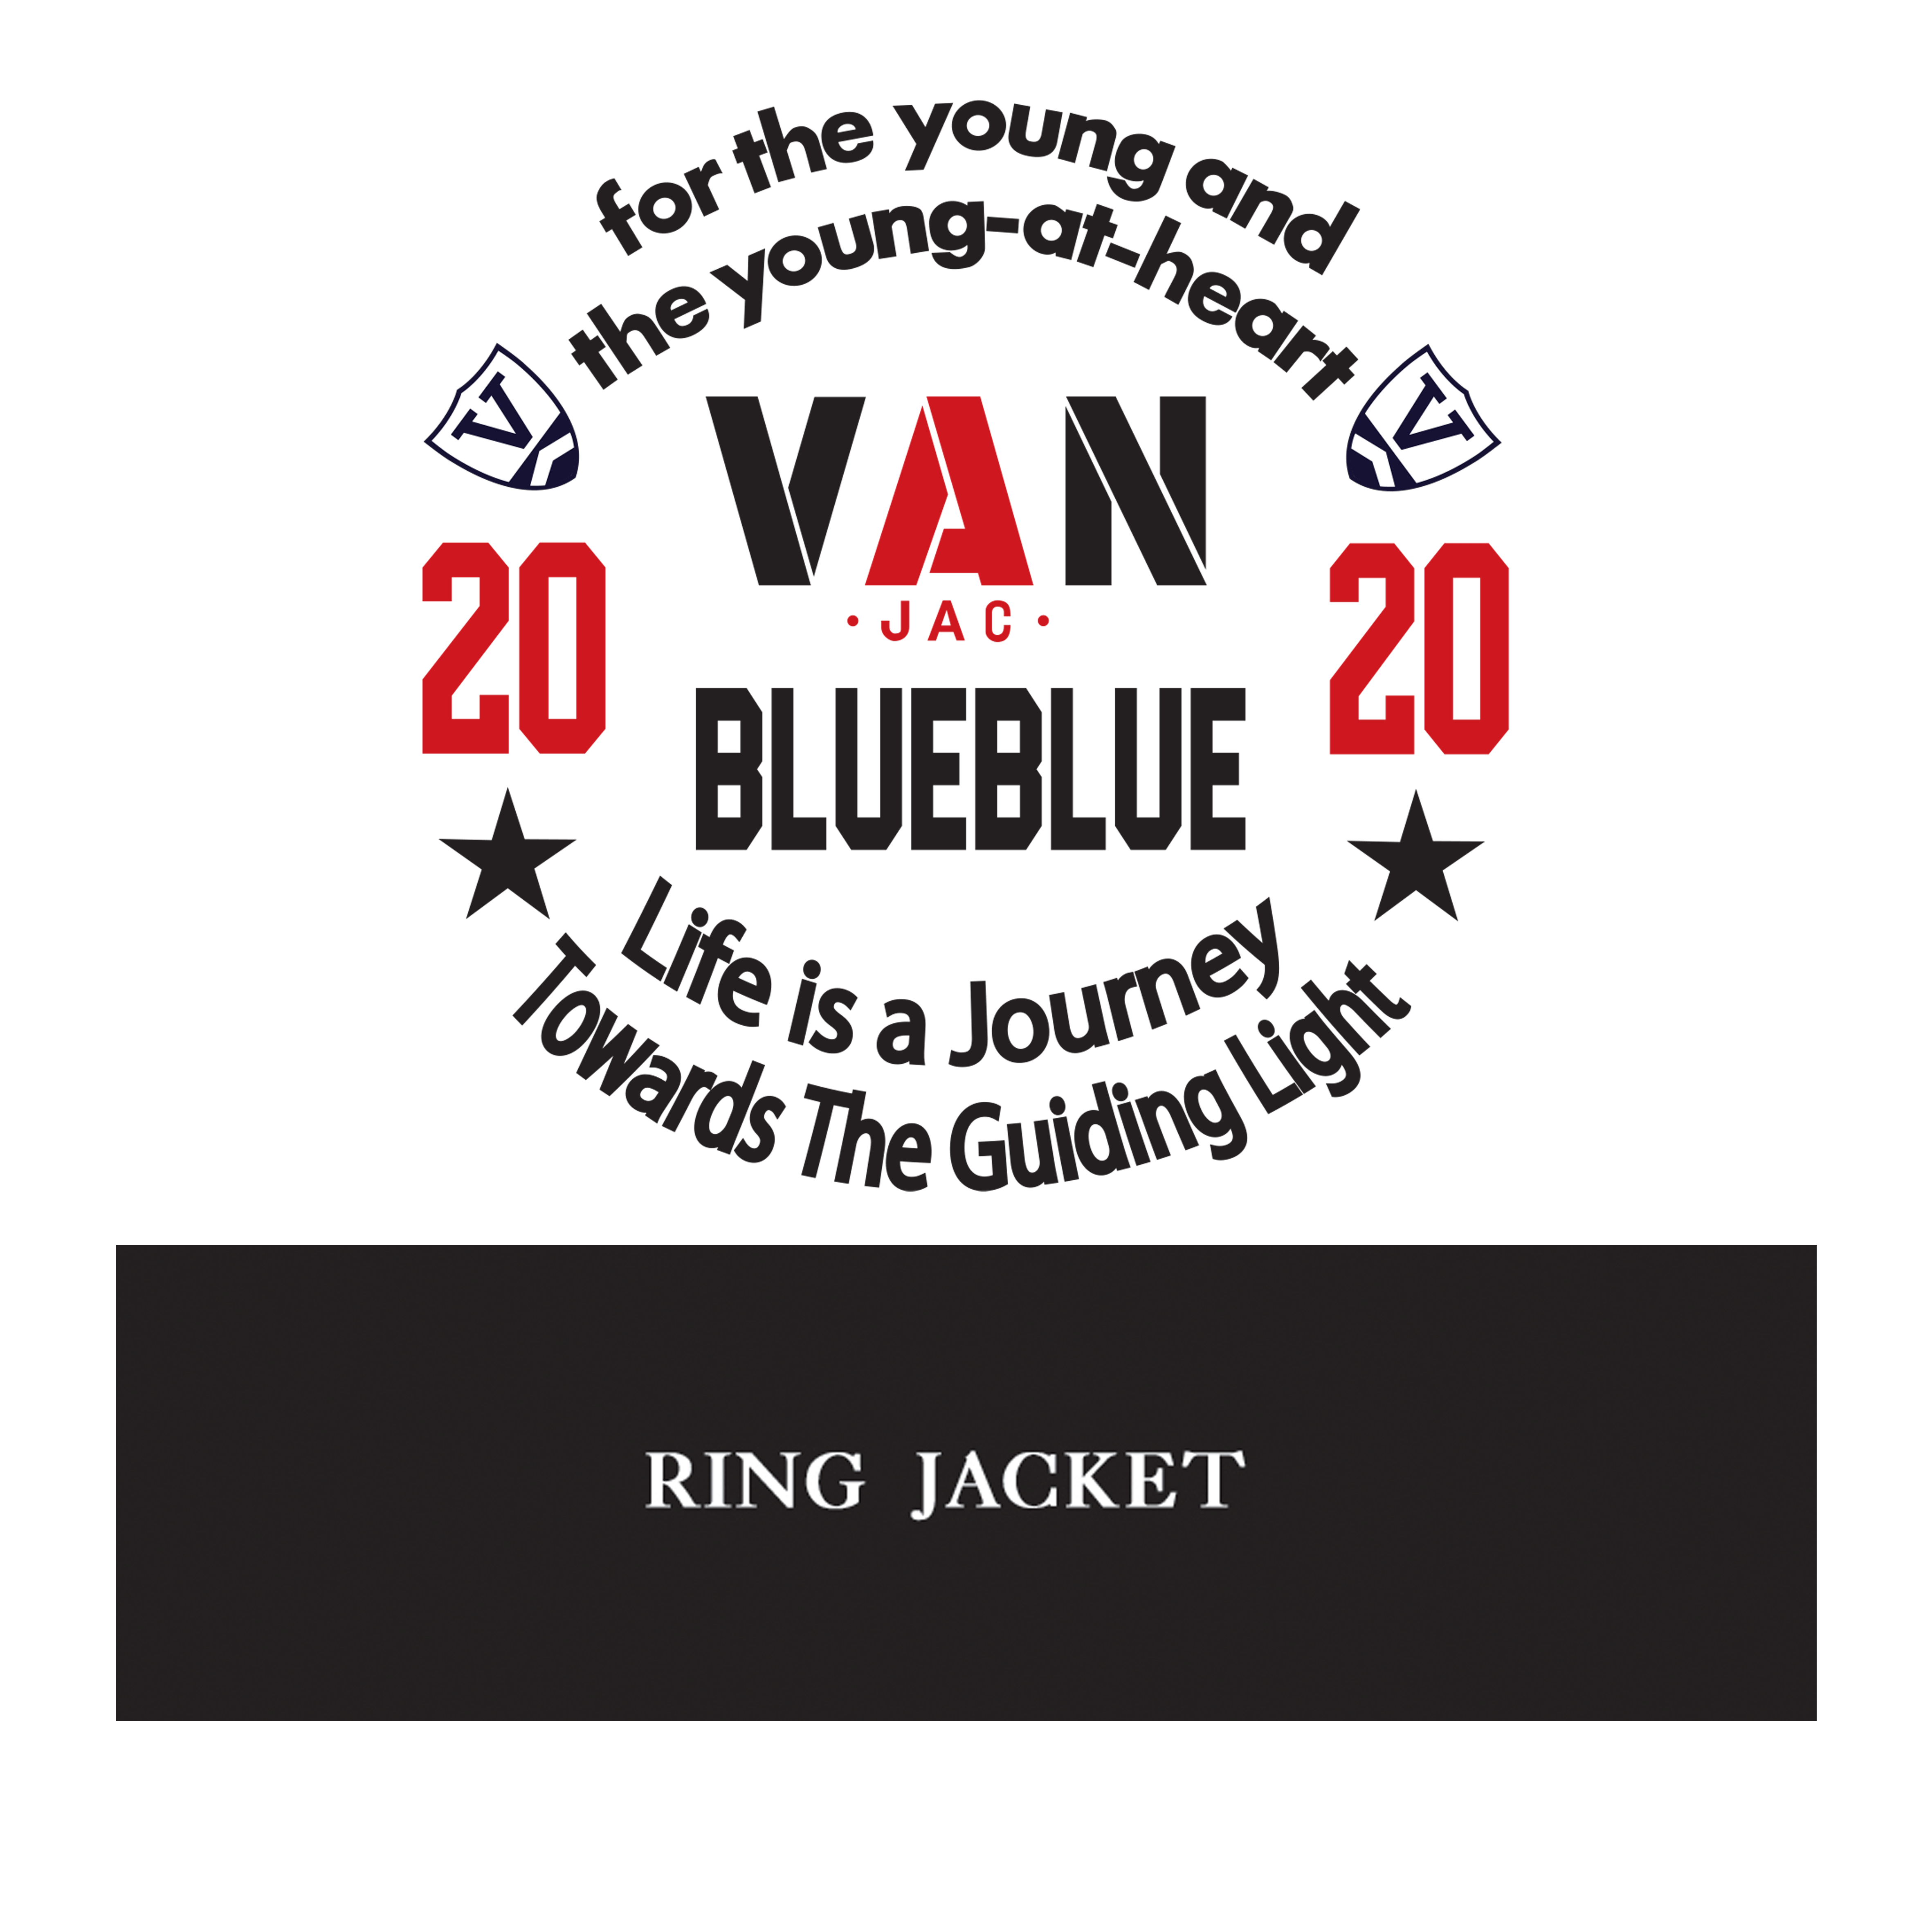 VAN・RING JACKET・BLUE BLUE